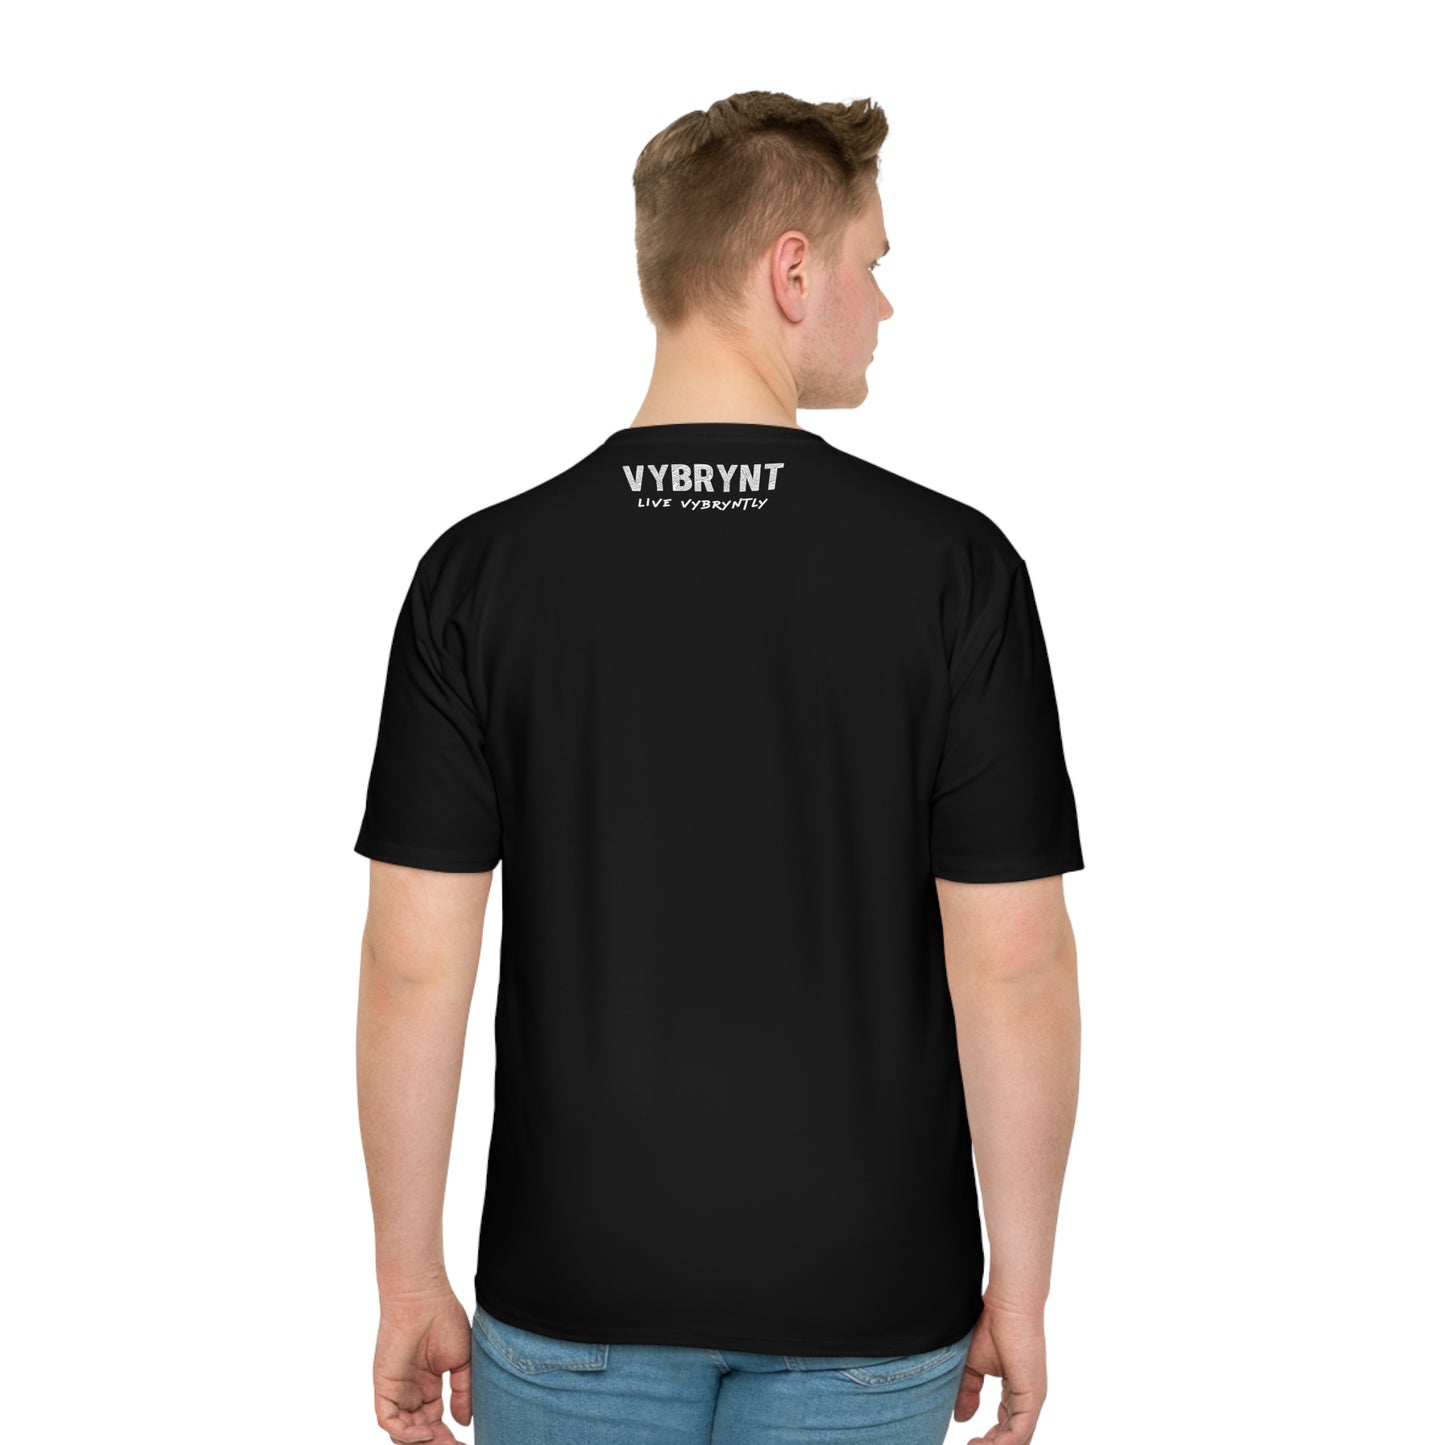 Warlideko Men's Black T-shirt